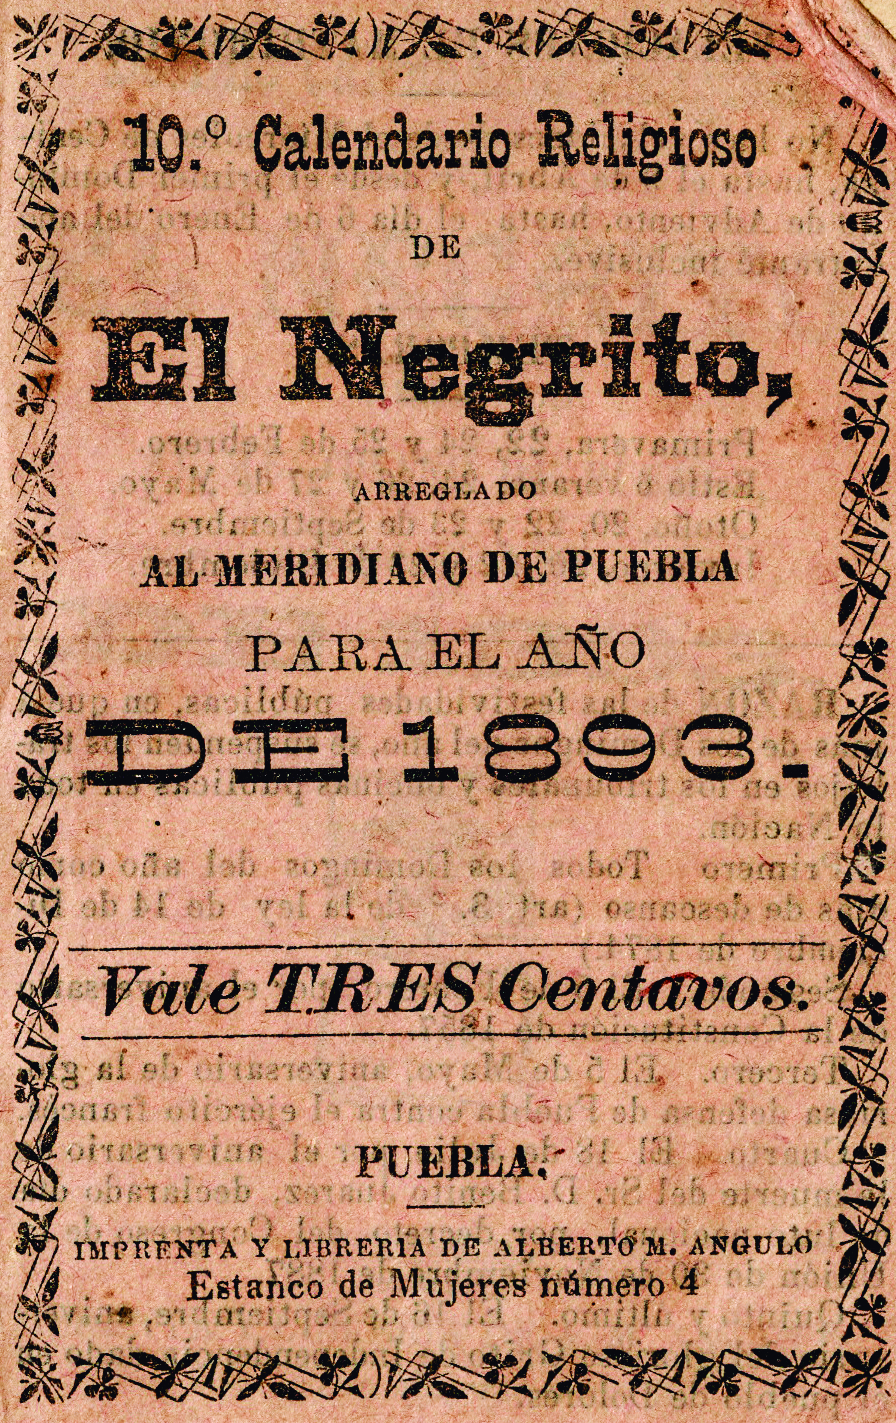 Décimo calendario religioso de El Negrito, arreglado al meridiano de Puebla, para el año de 1893